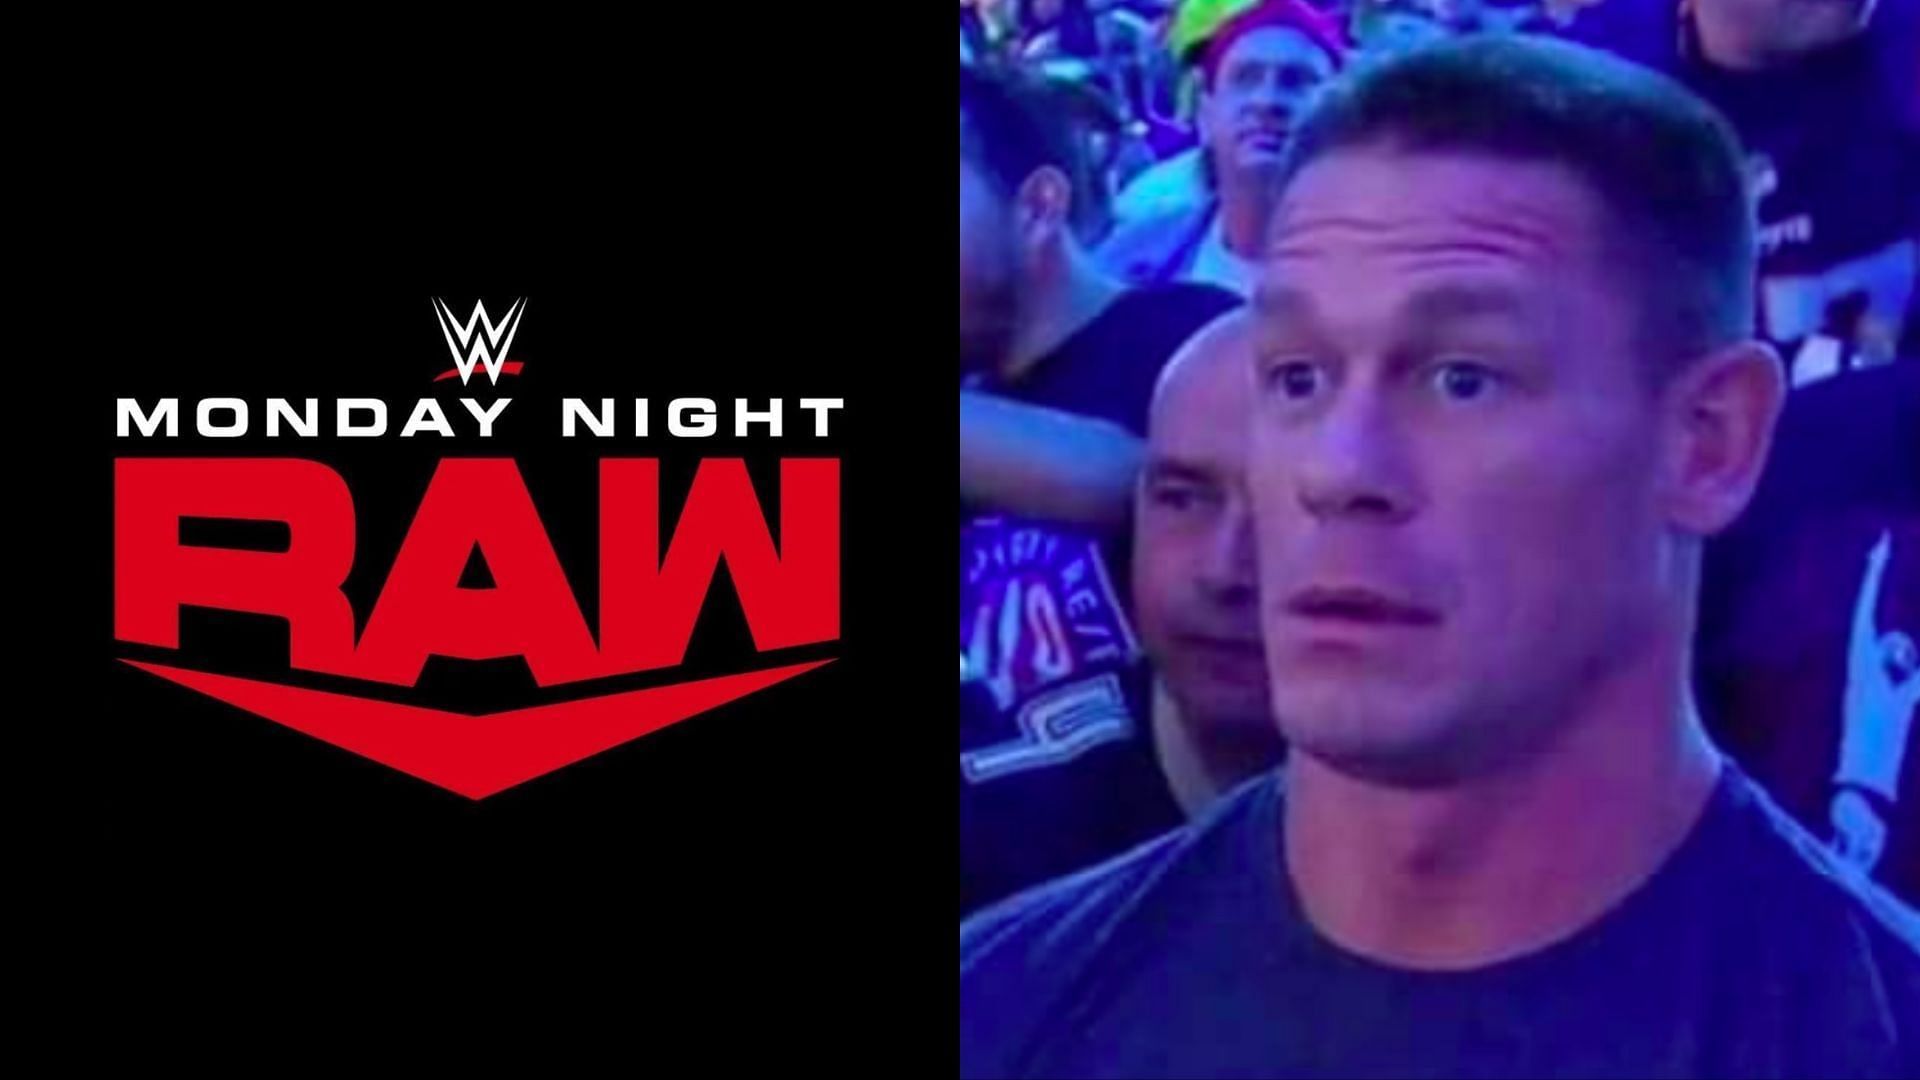 John Cena is returning to WWE RAW tonight in TD Garden, Boston.